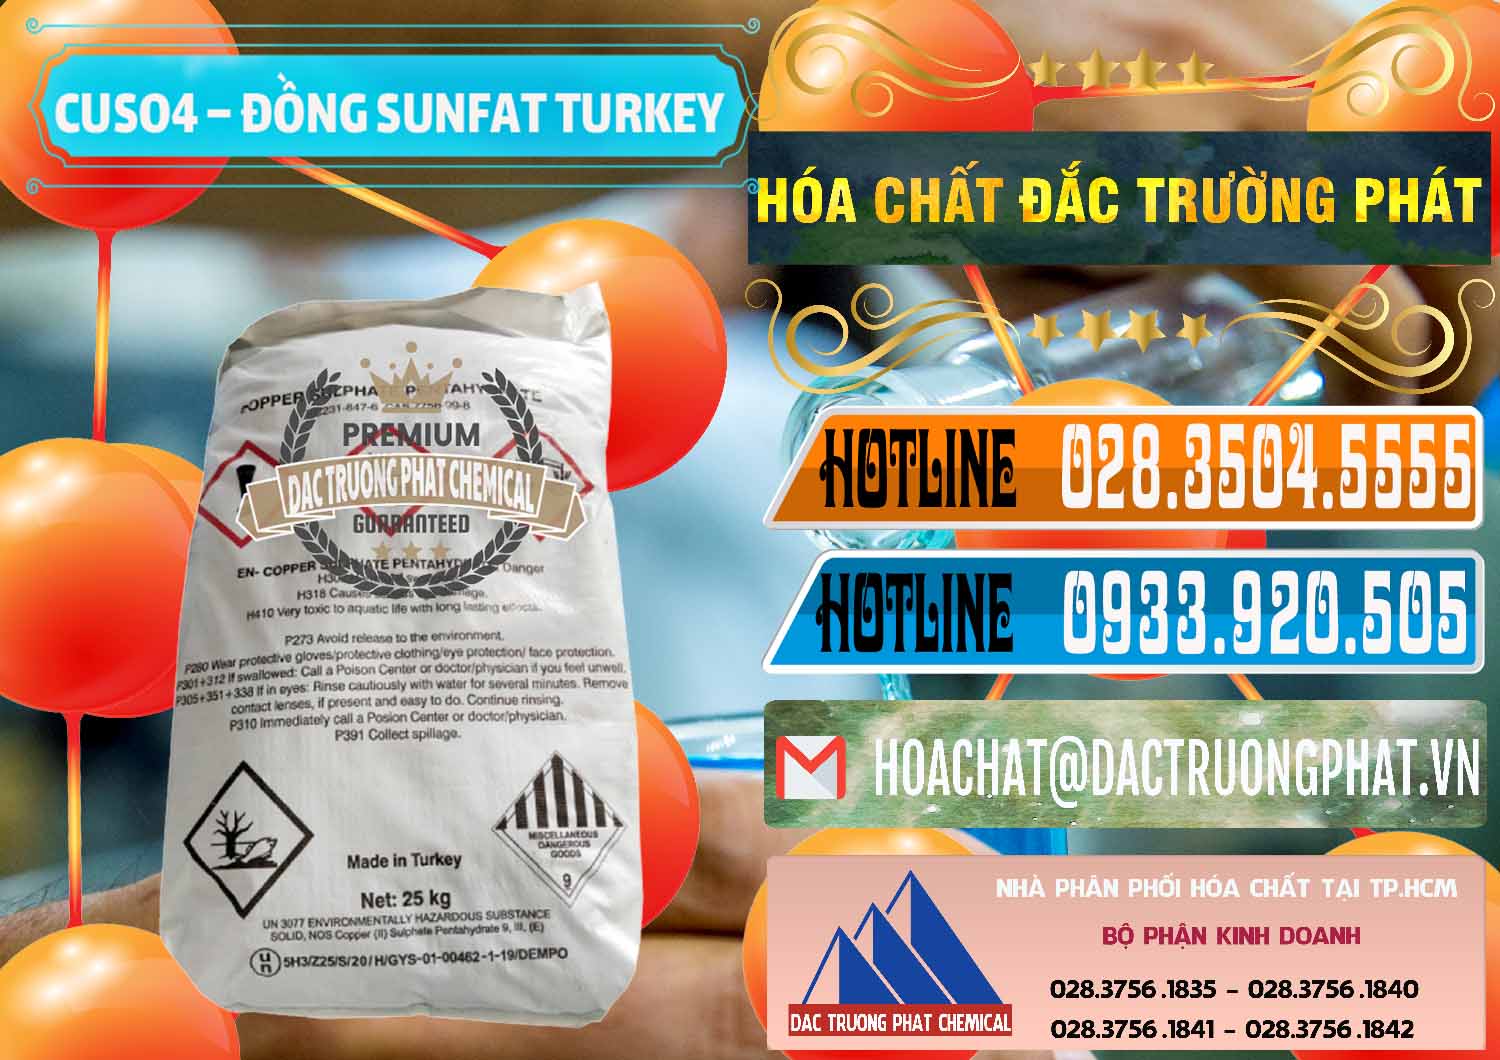 Công ty chuyên kinh doanh _ bán CuSO4 – Đồng Sunfat Thổ Nhĩ Kỳ Turkey - 0481 - Cung cấp ( phân phối ) hóa chất tại TP.HCM - stmp.net